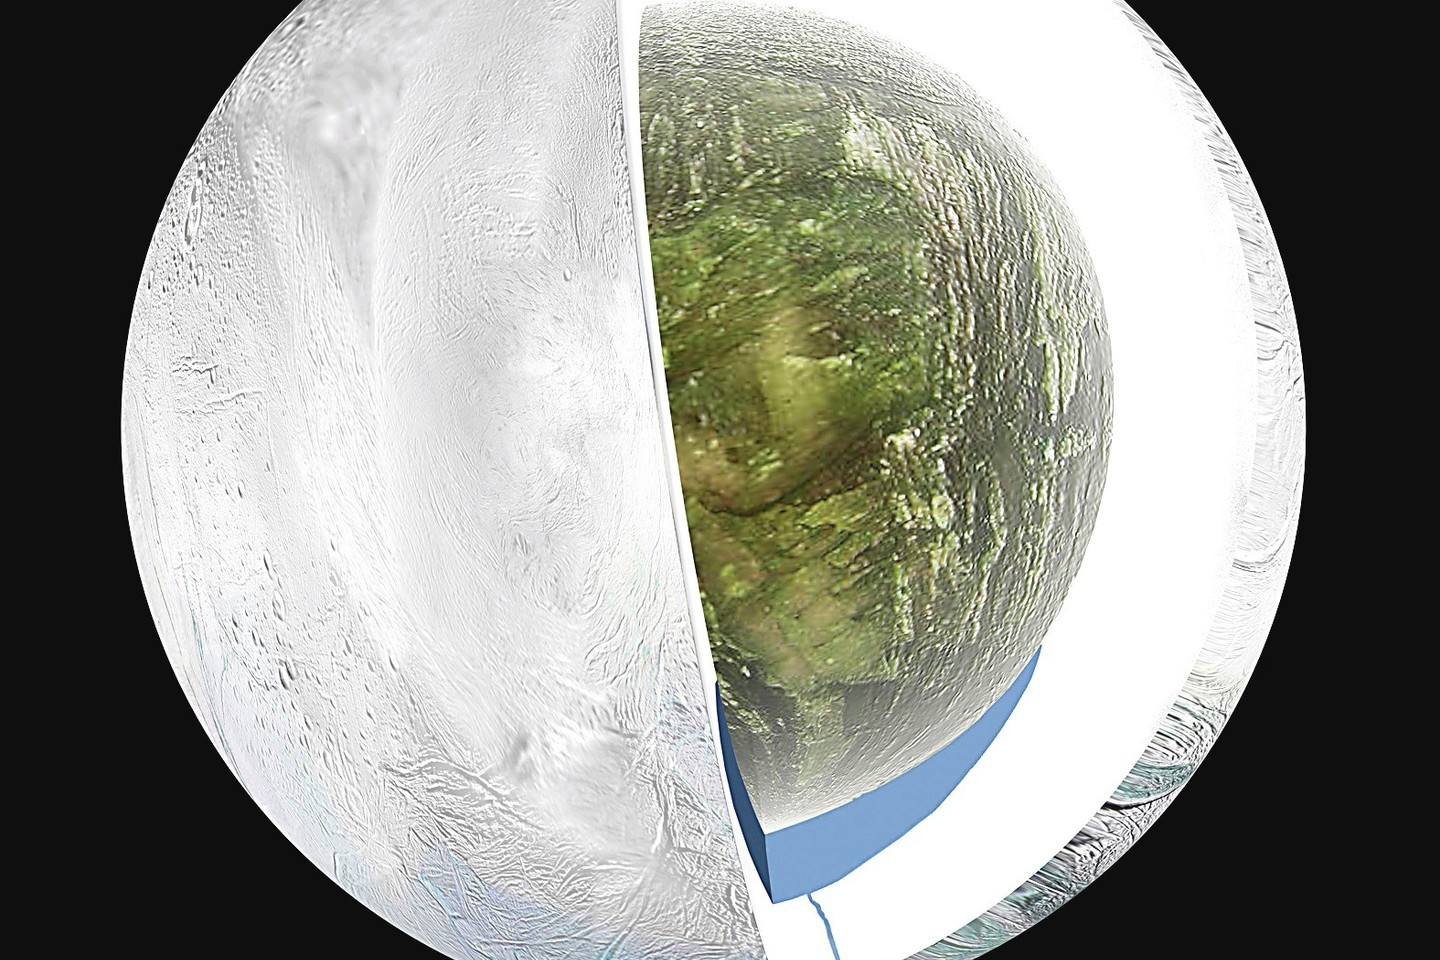 Pranešimas, esą Marse gali būti skysto vandens, vėl įplieskė kalbas apie nežemiškos gyvybės paieškas – pavyzdžiui, Saturno mėnulyje Encelade (nuotr.).<br>„Reuters“/“Scanpix“ nuotr.